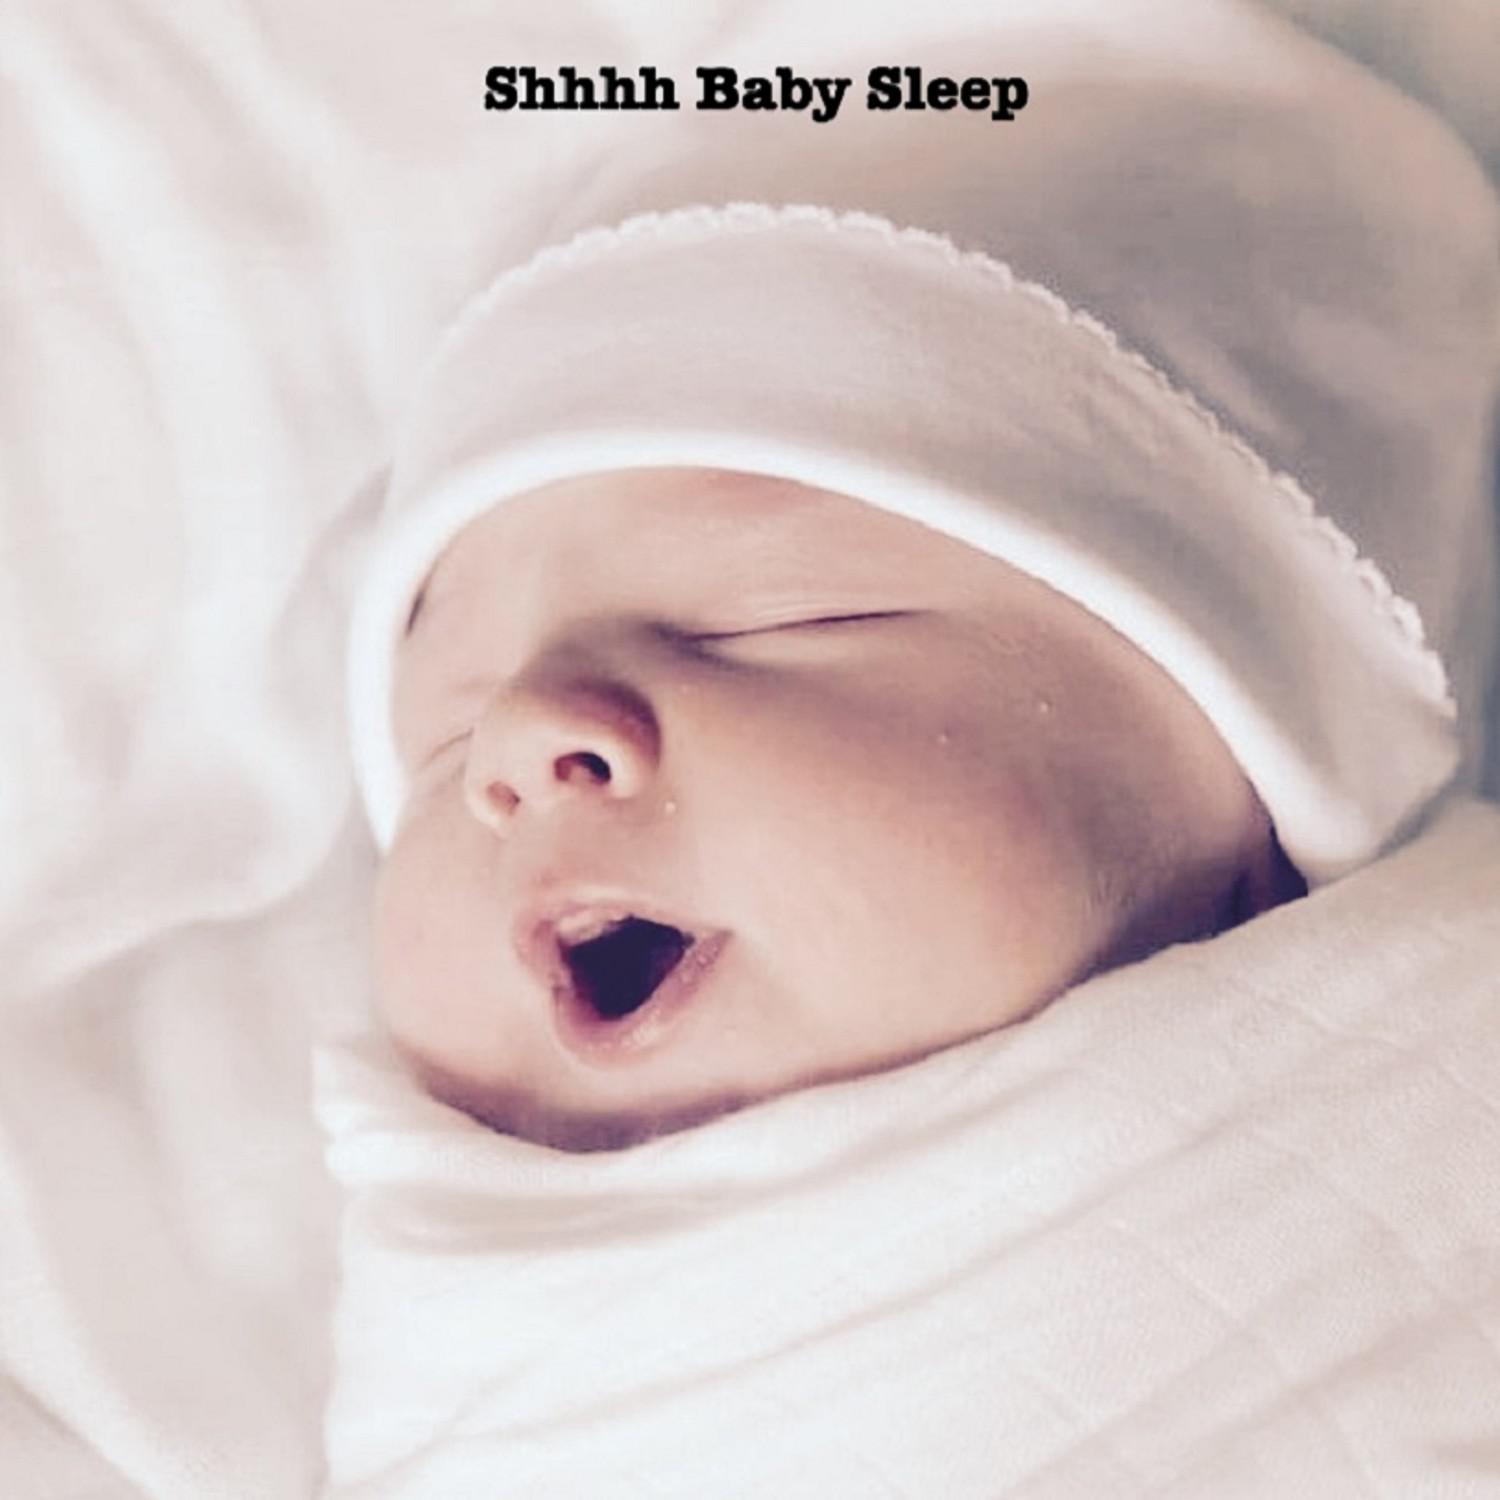 Shhhh Baby Sleep (Extended Loop)